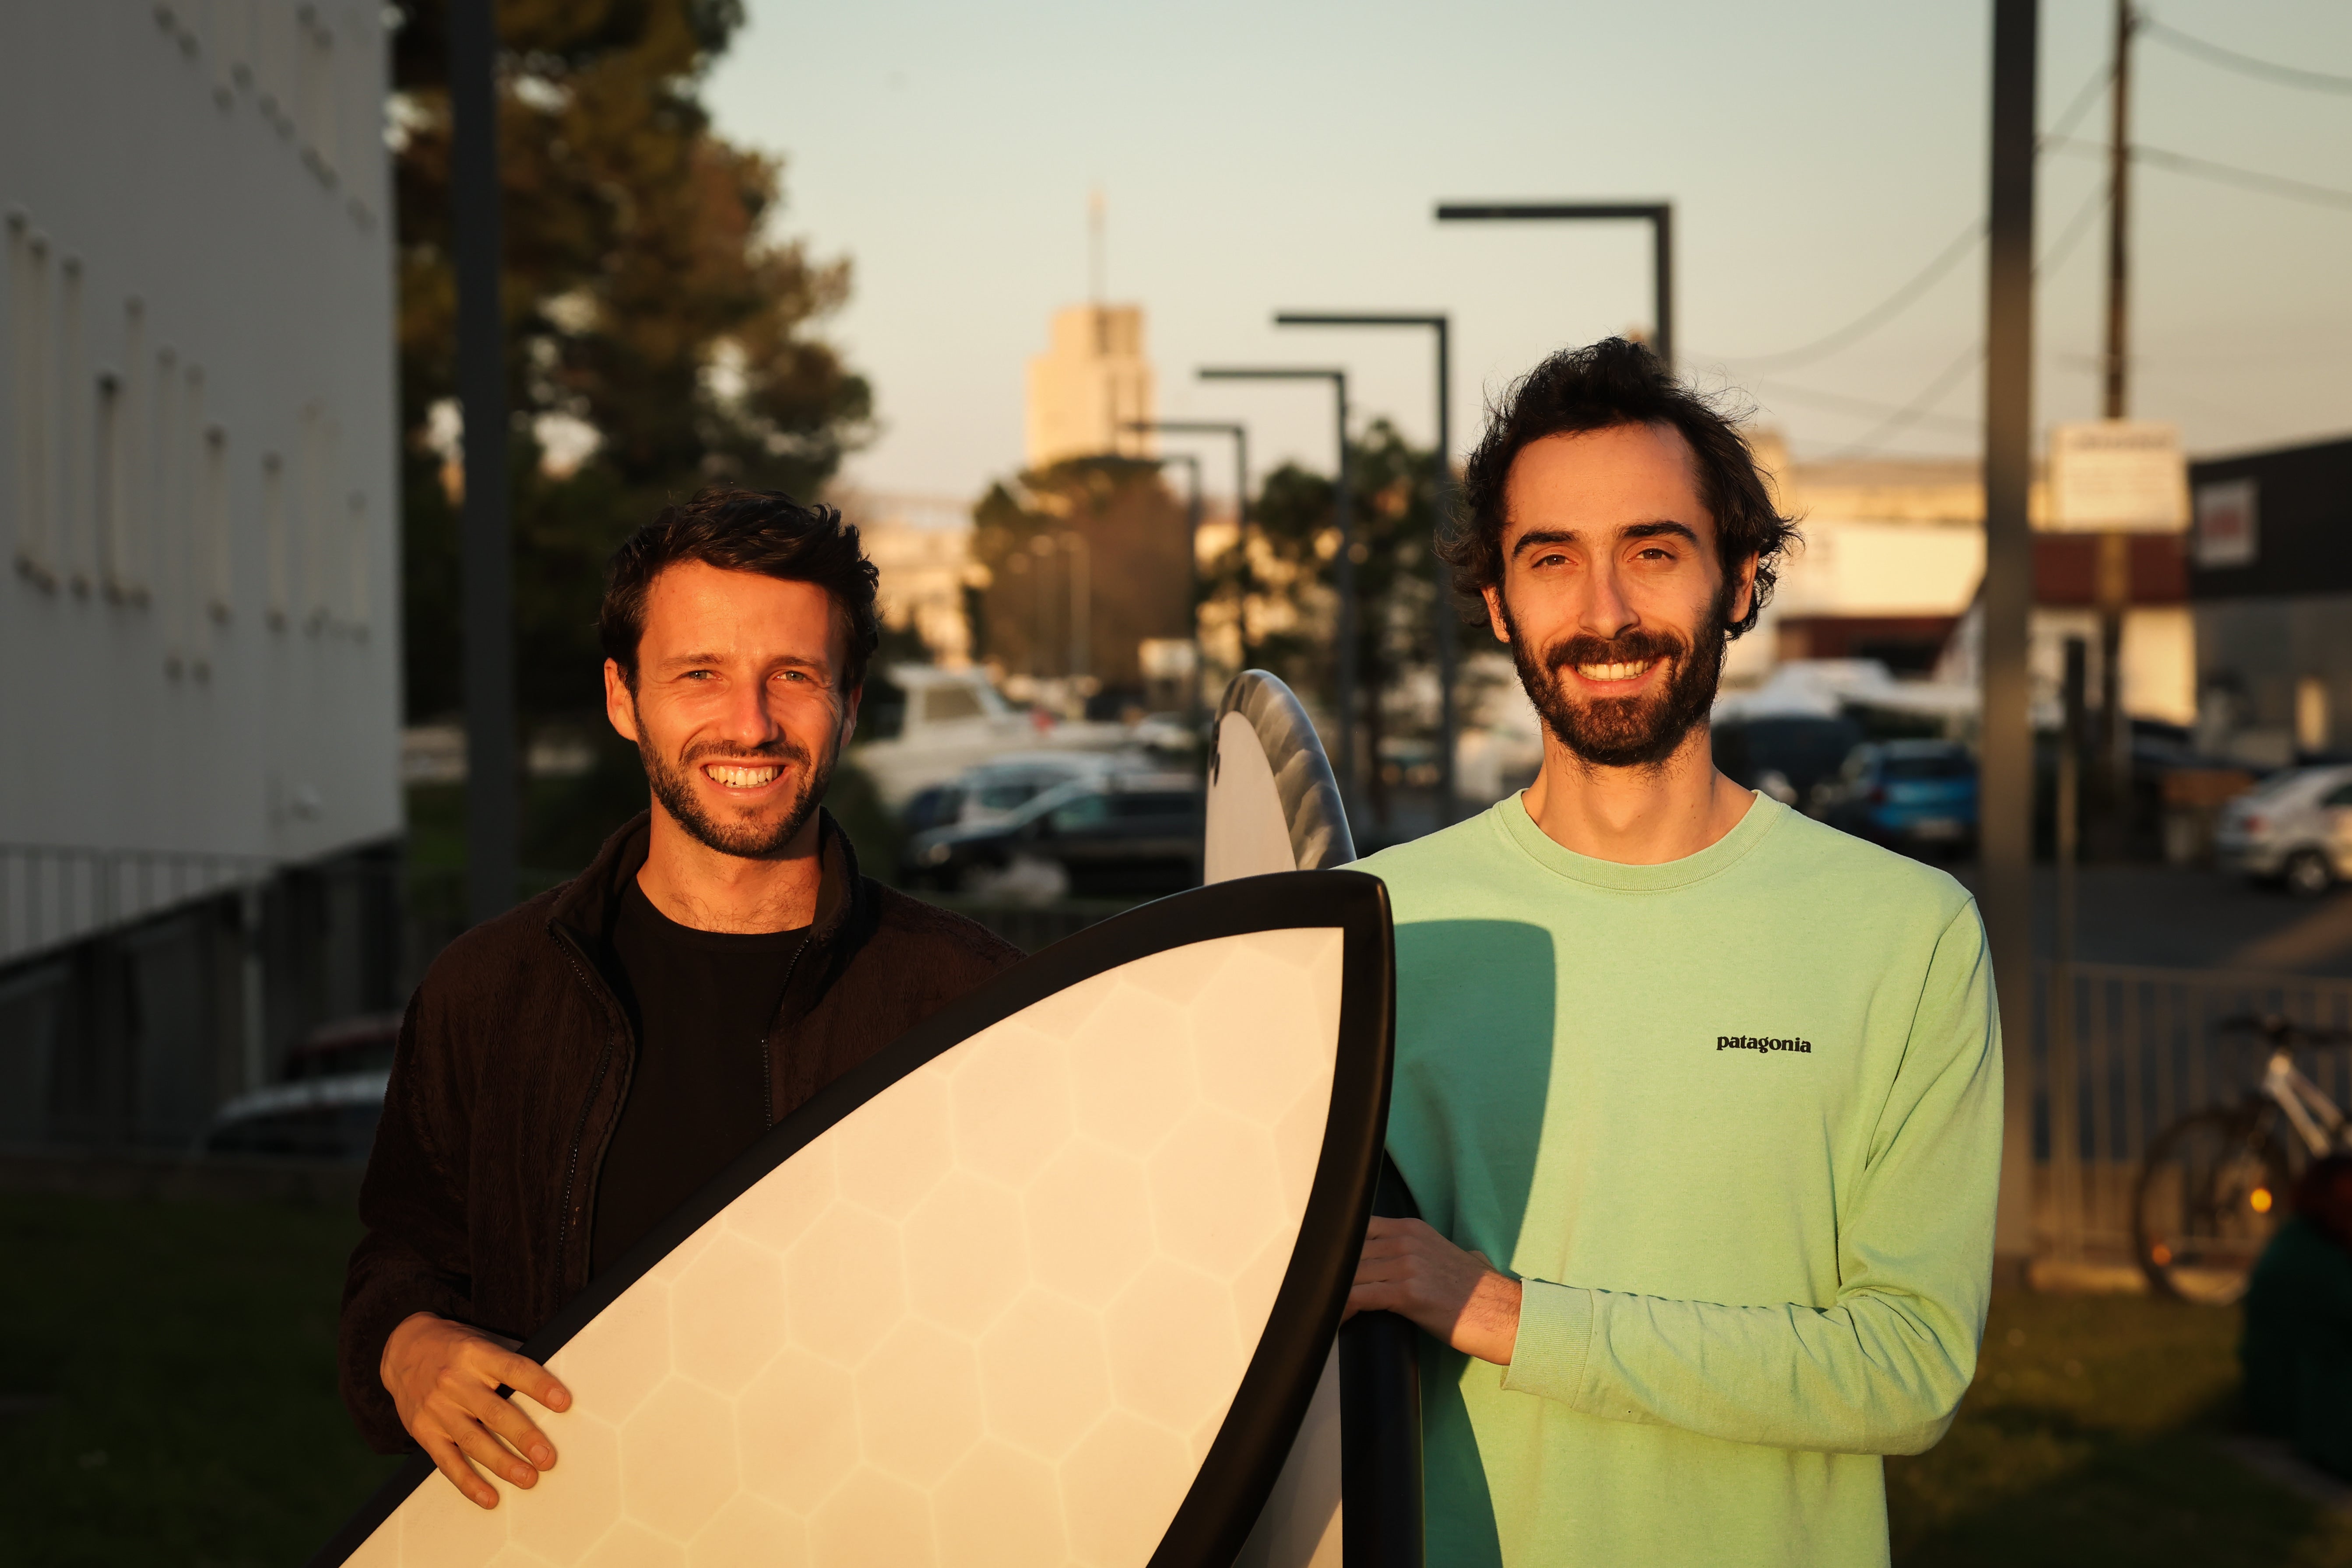 Les fondateurs de la marque de surf Wyve Leo et Sylvain avec leur planche de surf made in france imprimées en 3D